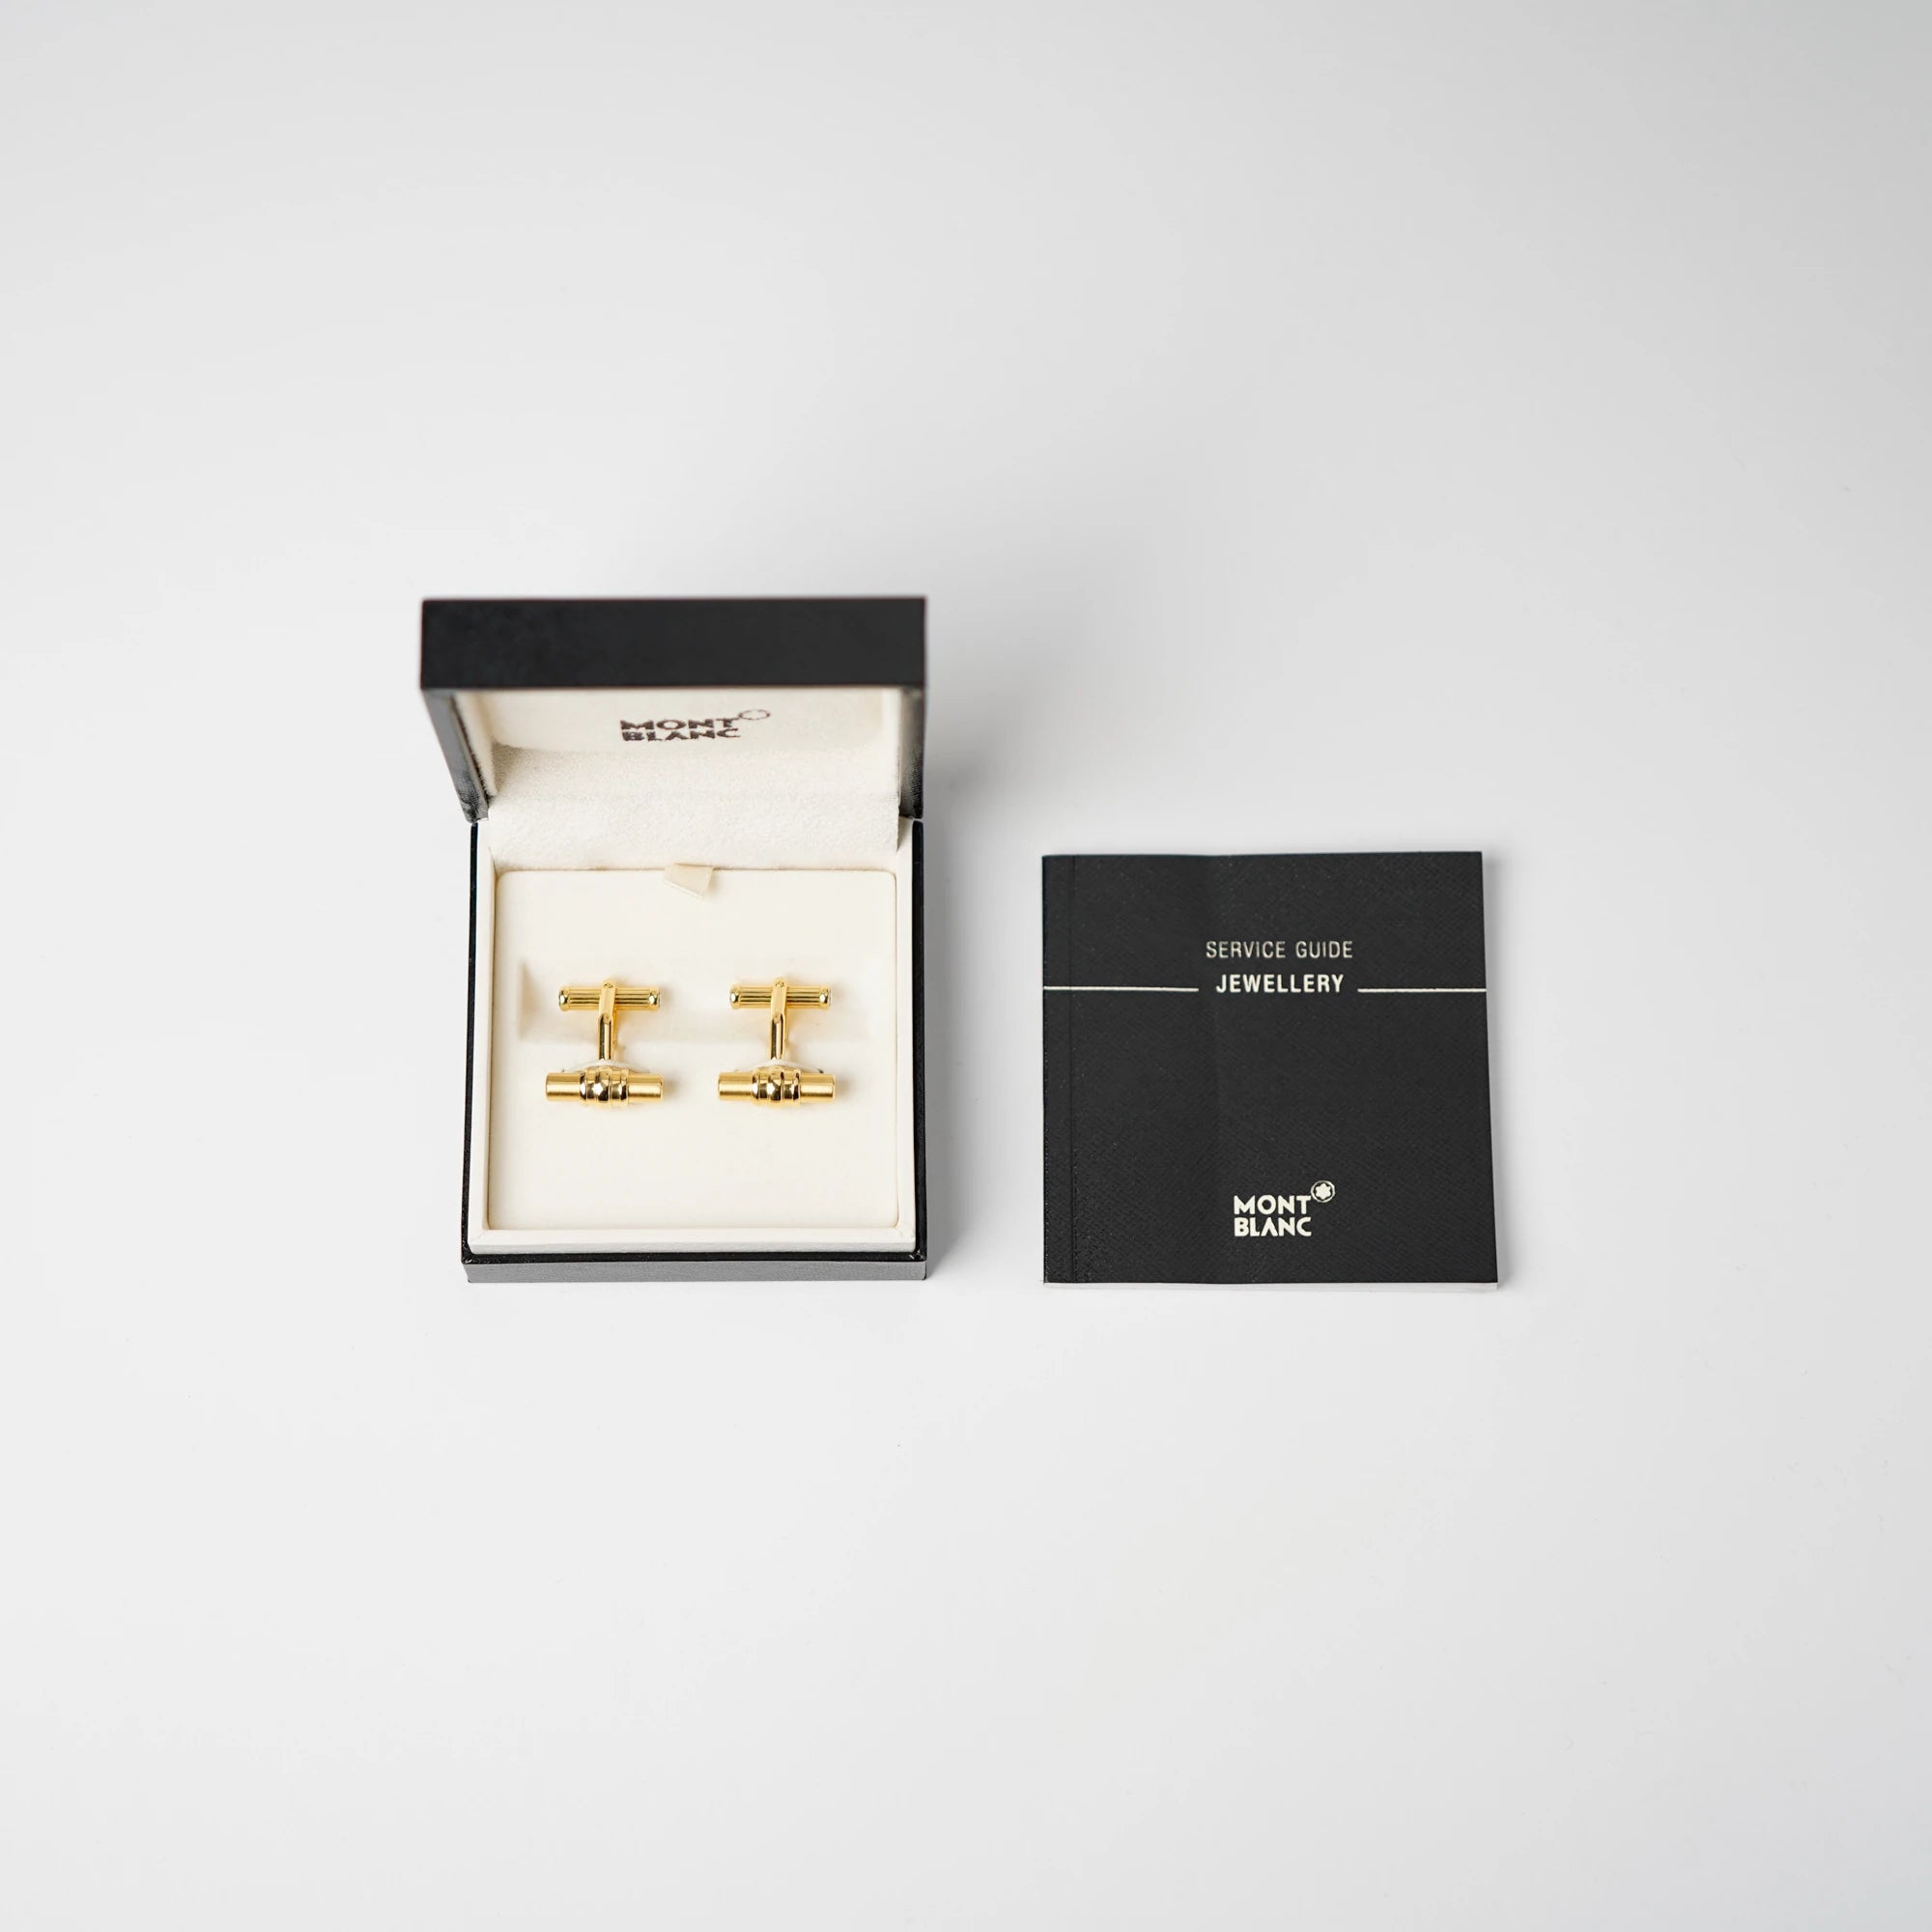 Gold-plattinierte Manschettenknöpfe von Mont Blanc mit der Modellbezeichnung "Bar 3 Rings" liegen in der originalen Schachtel und daneben der Jewellry Service Guide der Marke